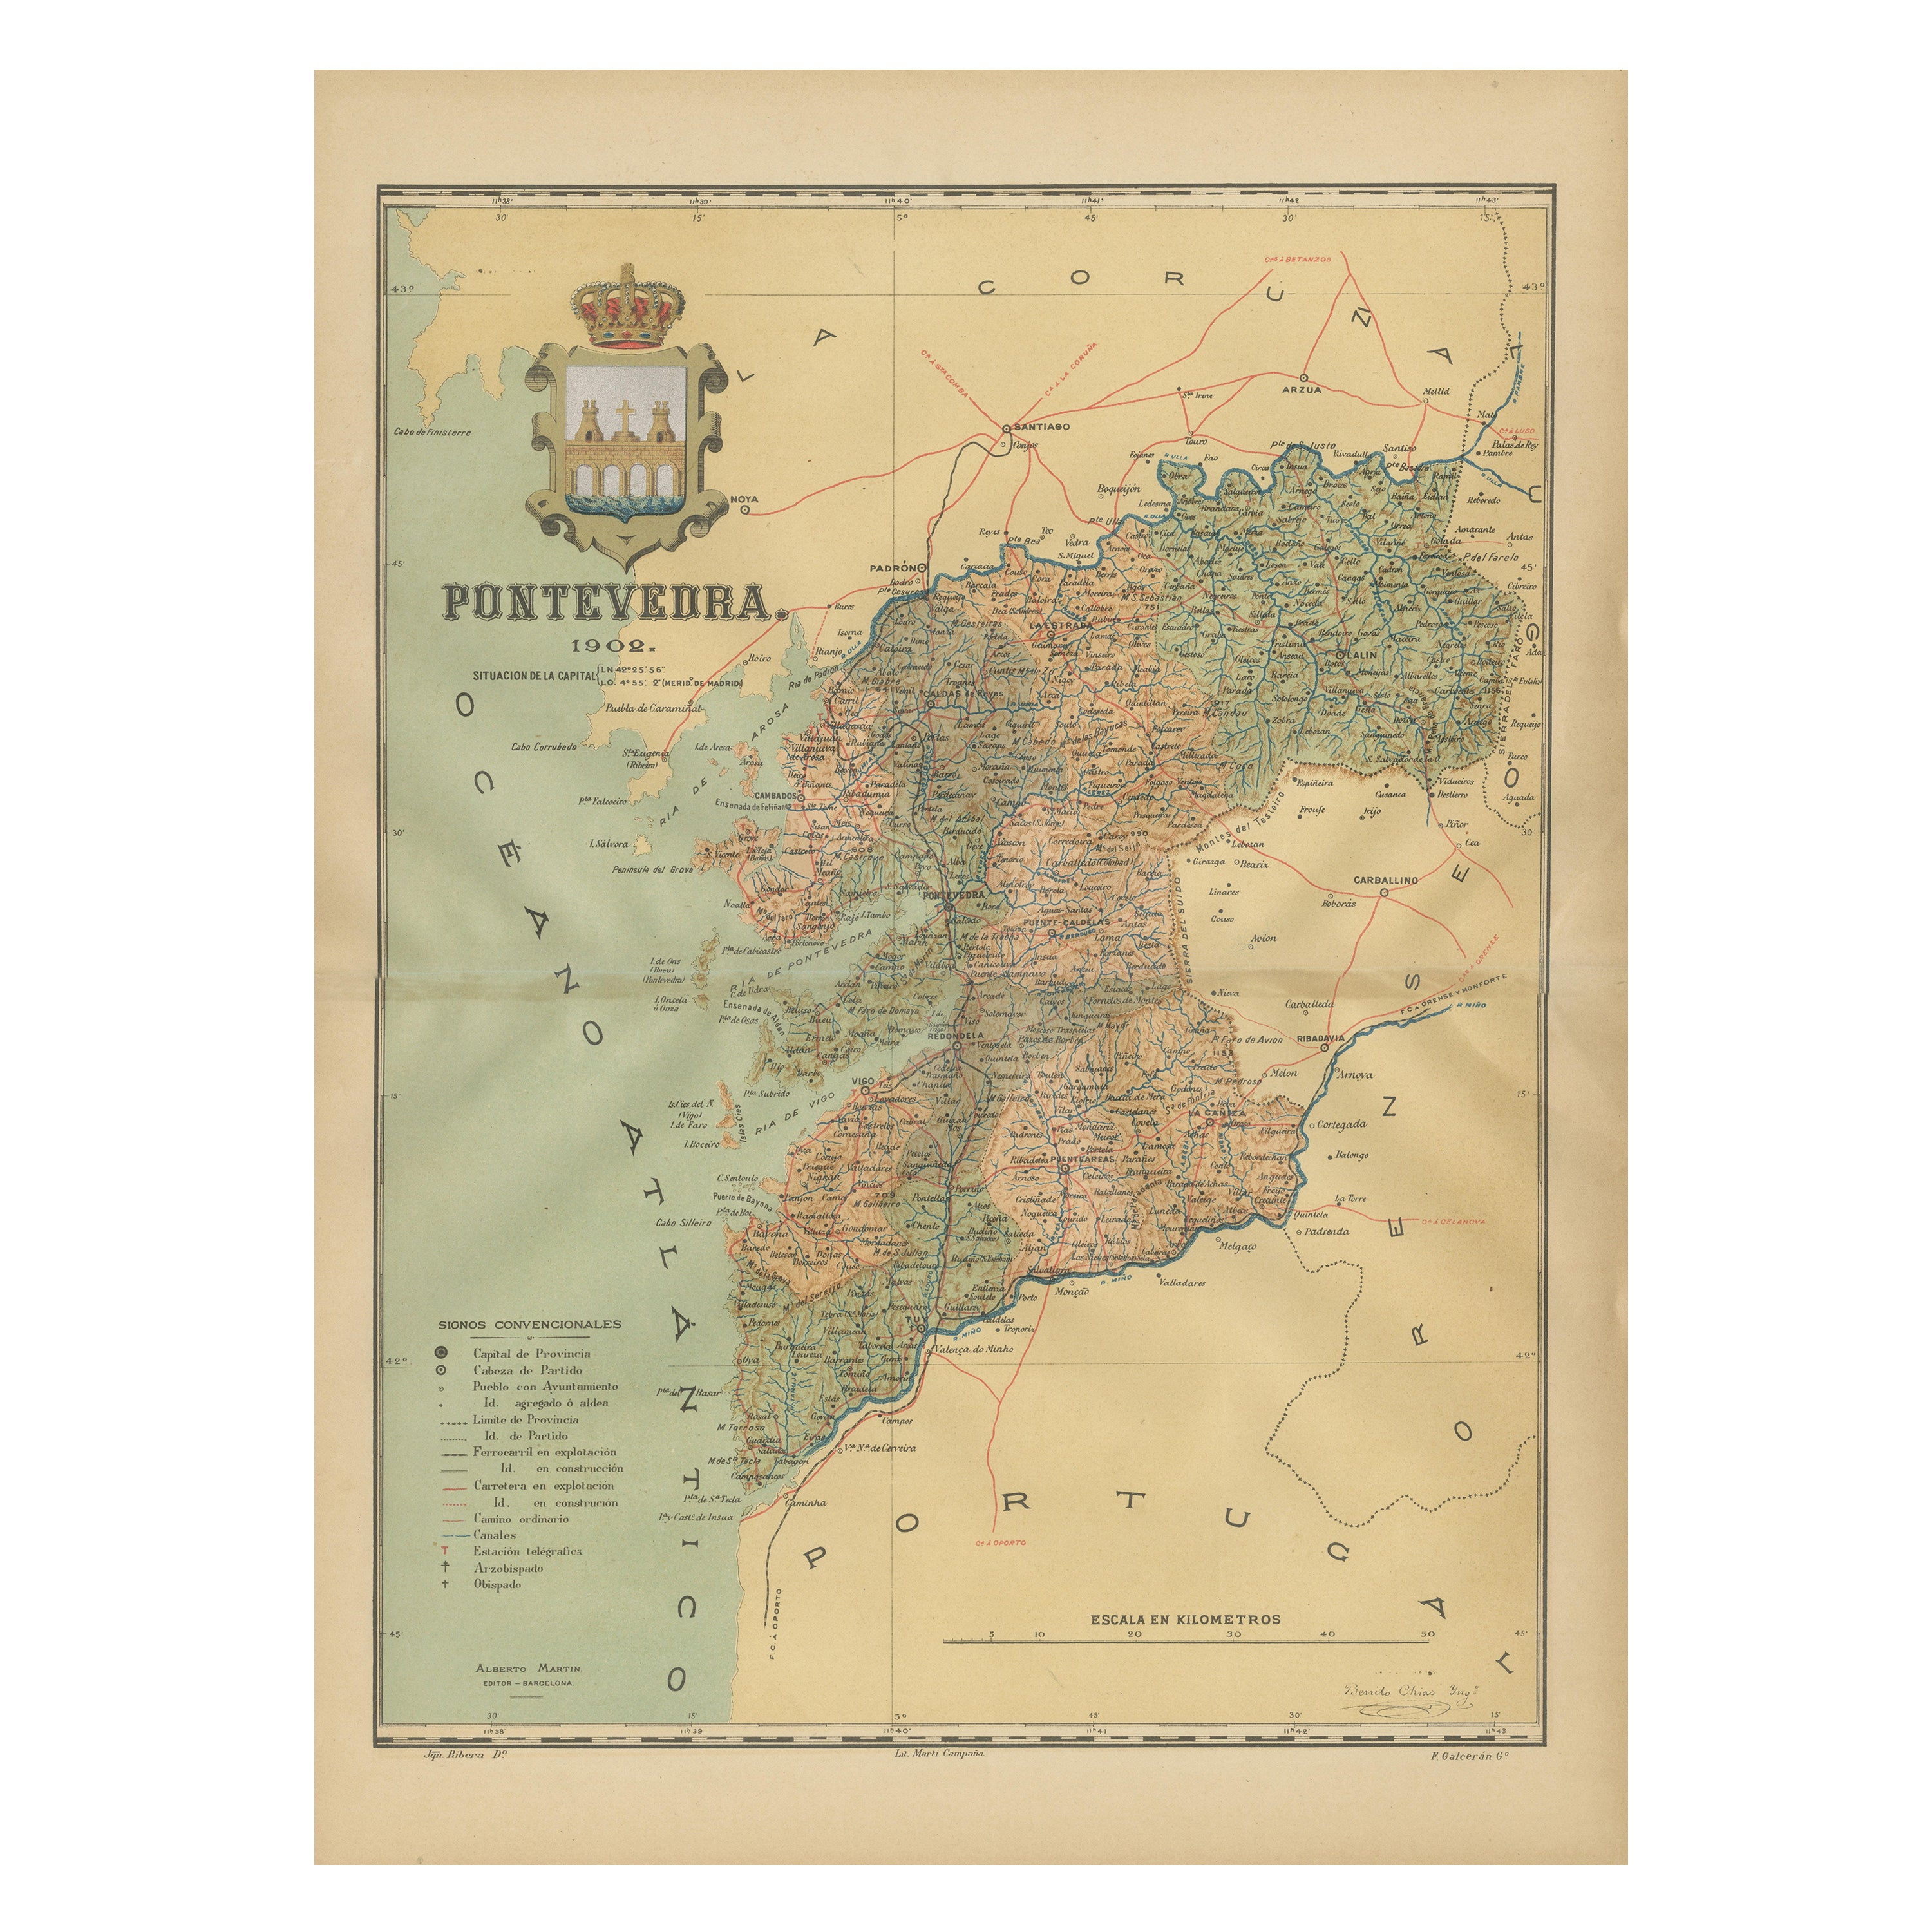 Cartographic Survey of Pontevedra, 1902: Crossroads of Galicia"